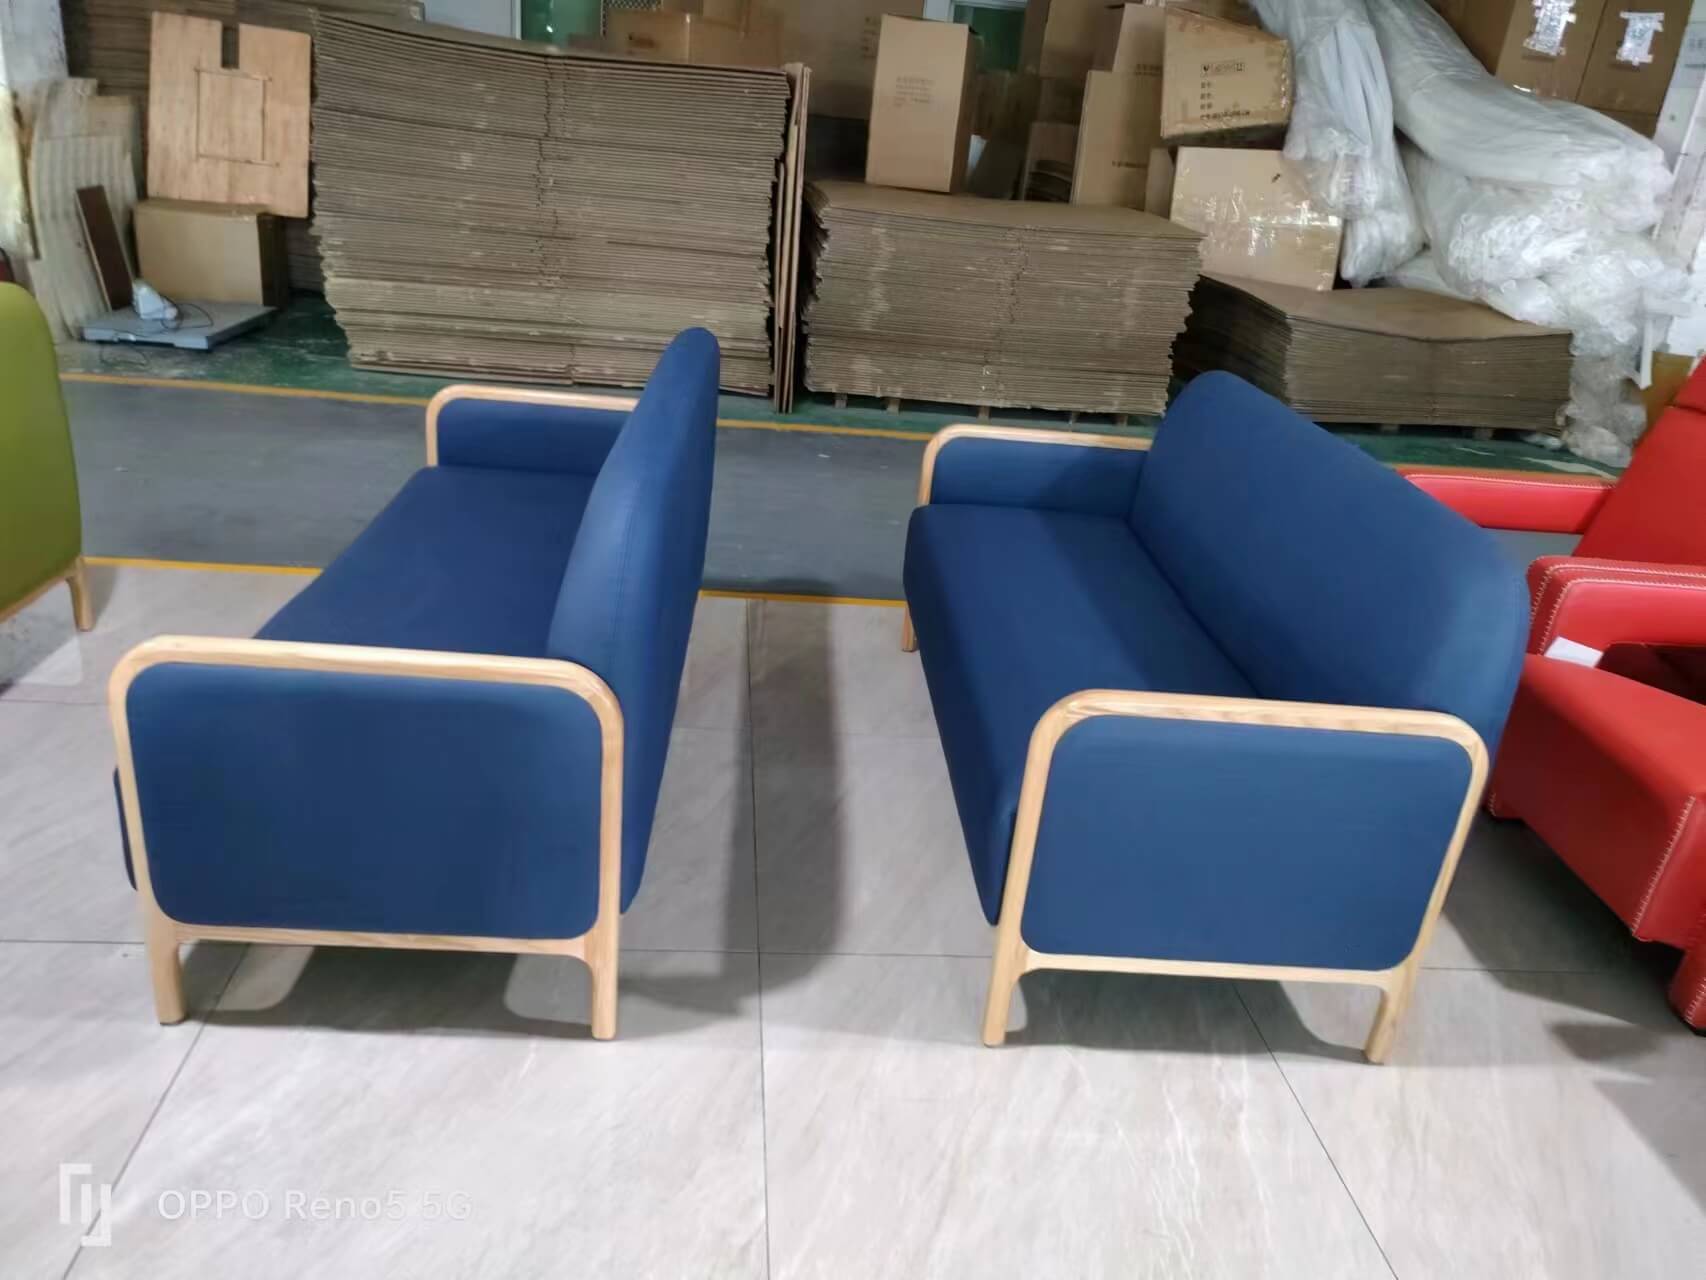 blue waiting area sofa